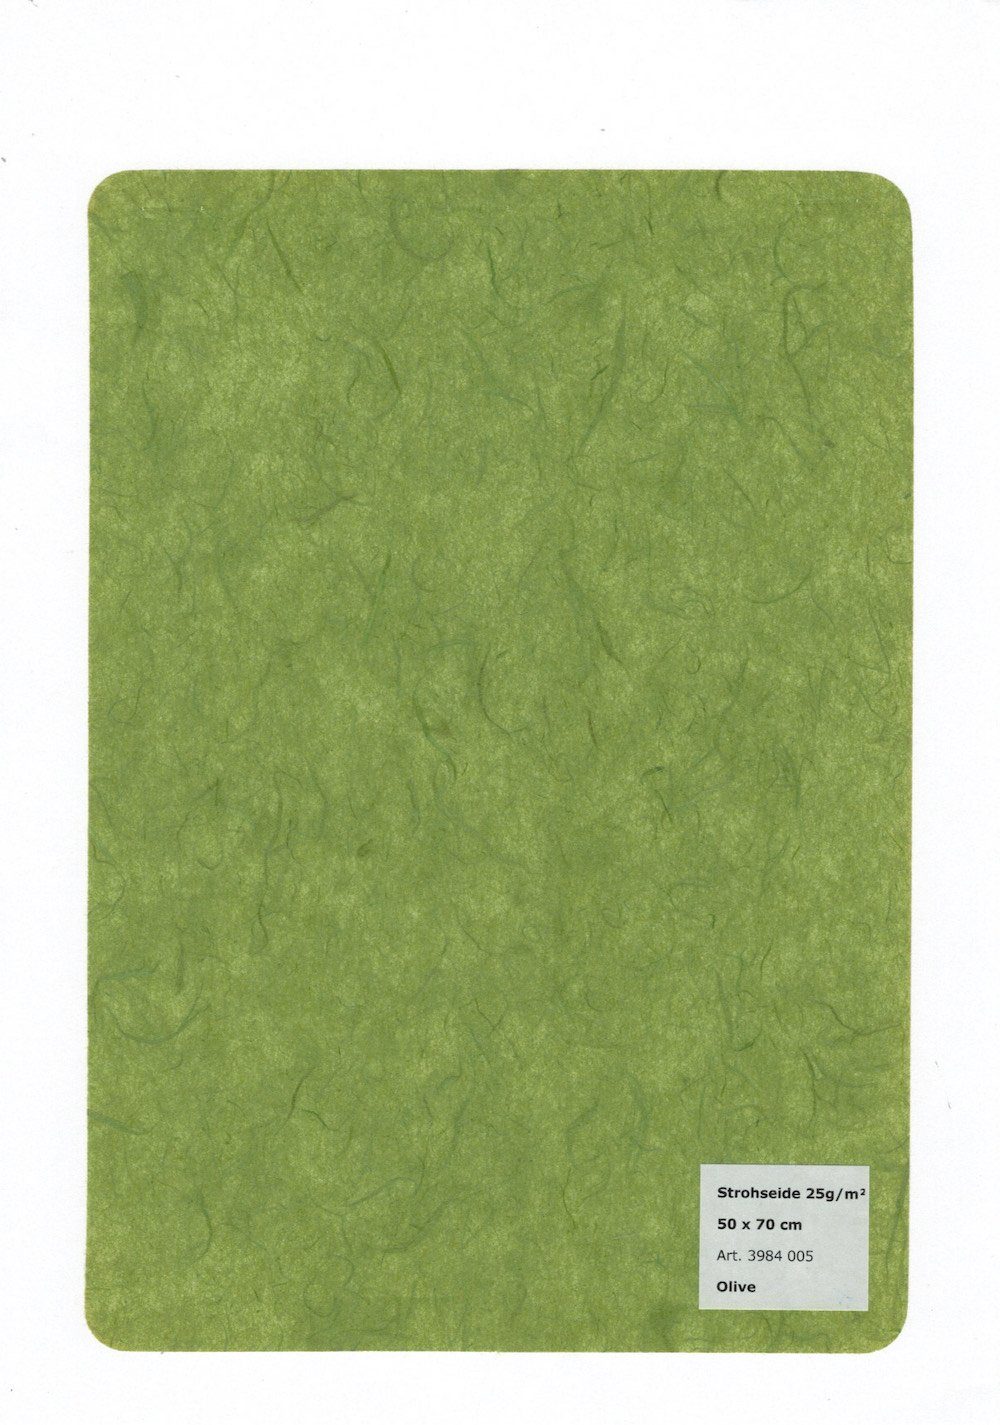 STYLO 25 g/m² HobbyFun 1 Strohseide Olive 50x70cm, Bogen Zeichenpapier